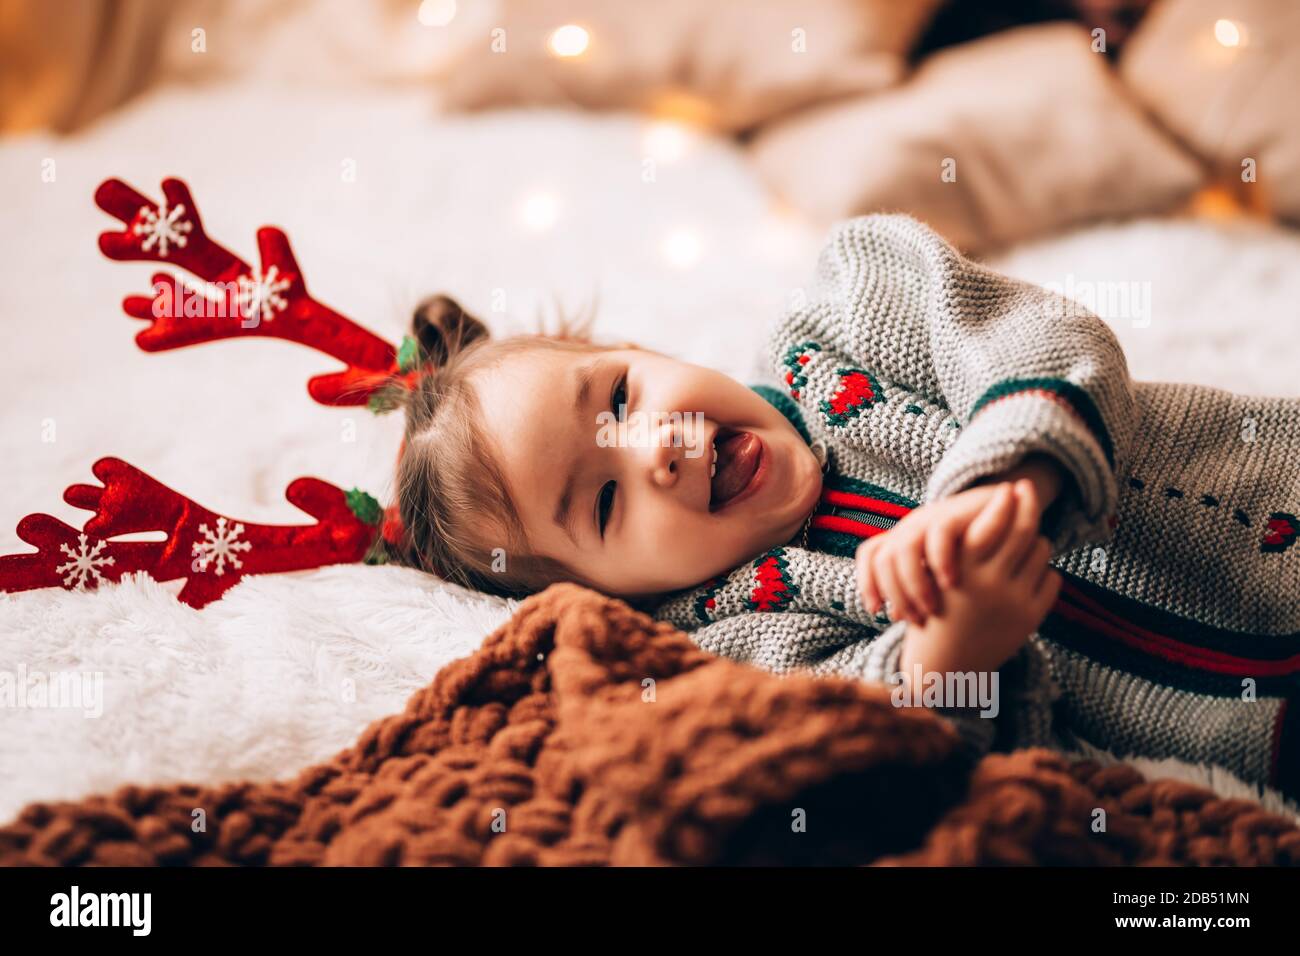 Kleines Mädchen liegt auf einem großen Bett. Das Kind hat Geweihe auf dem Kopf. Weihnachtsstimmung. Stockfoto